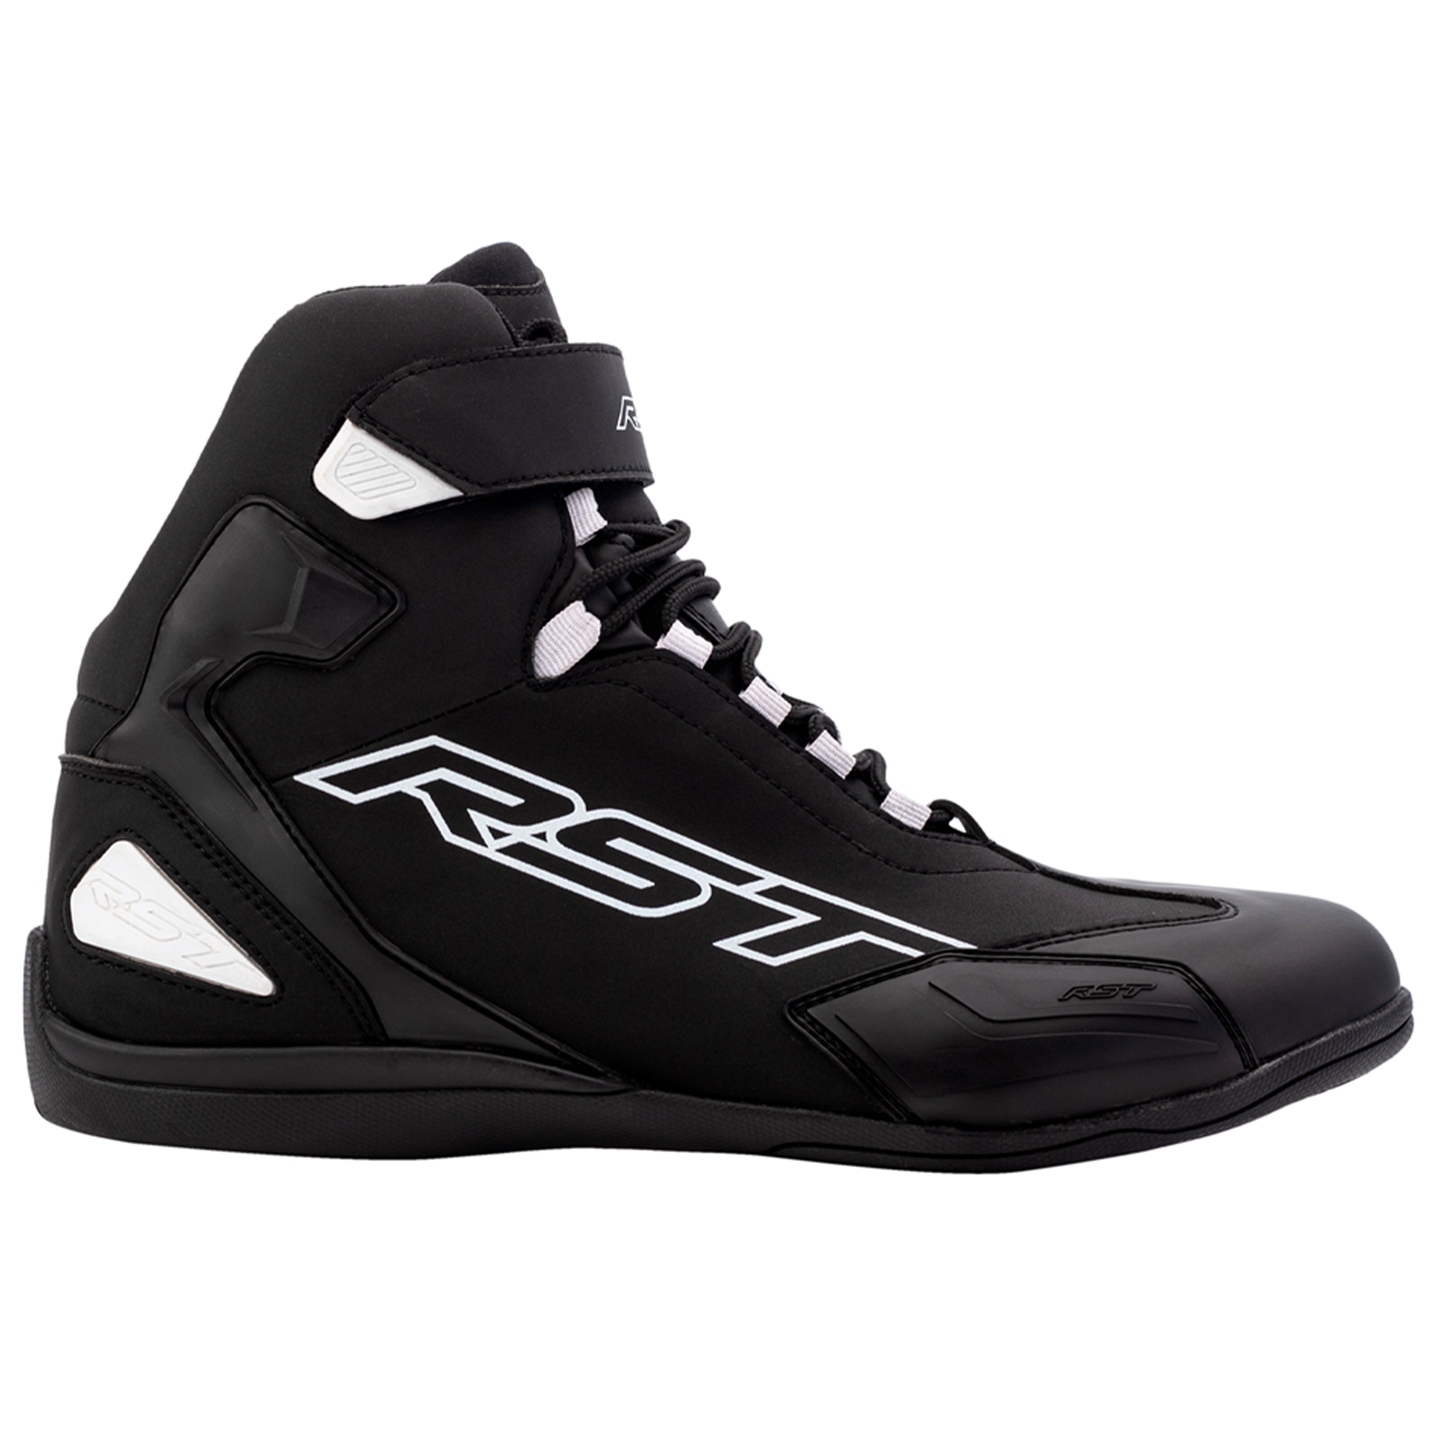 RST Sabre Moto Shoe Men's (CE) Boots - Black/White (3053)